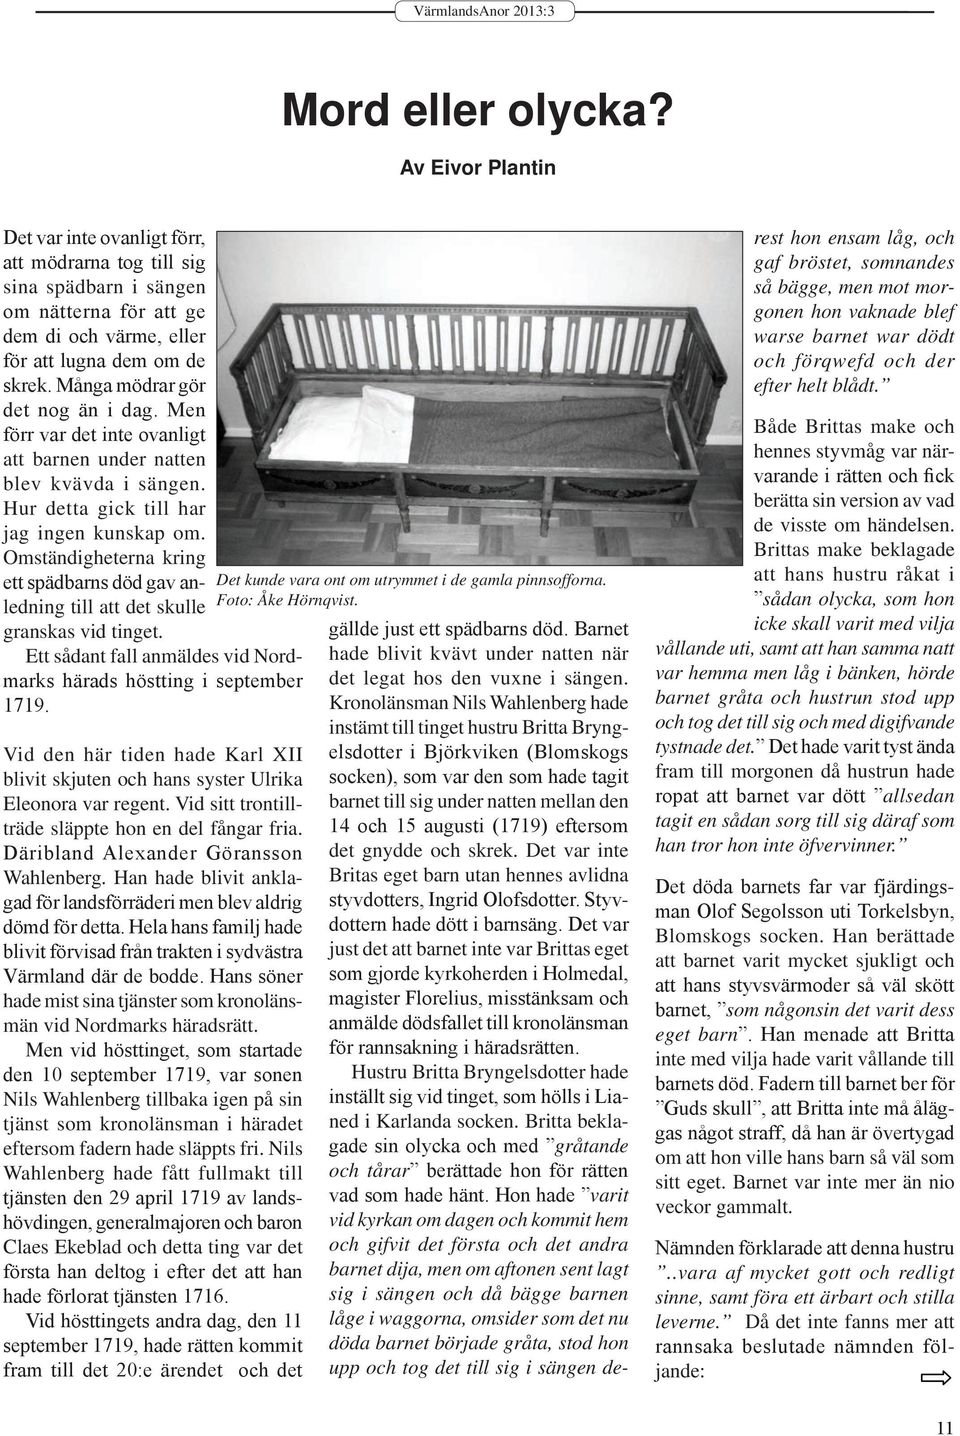 Omständigheterna kring ett spädbarns död gav anledning till att det skulle granskas vid tinget. Ett sådant fall anmäldes vid Nordmarks härads höstting i september 1719.